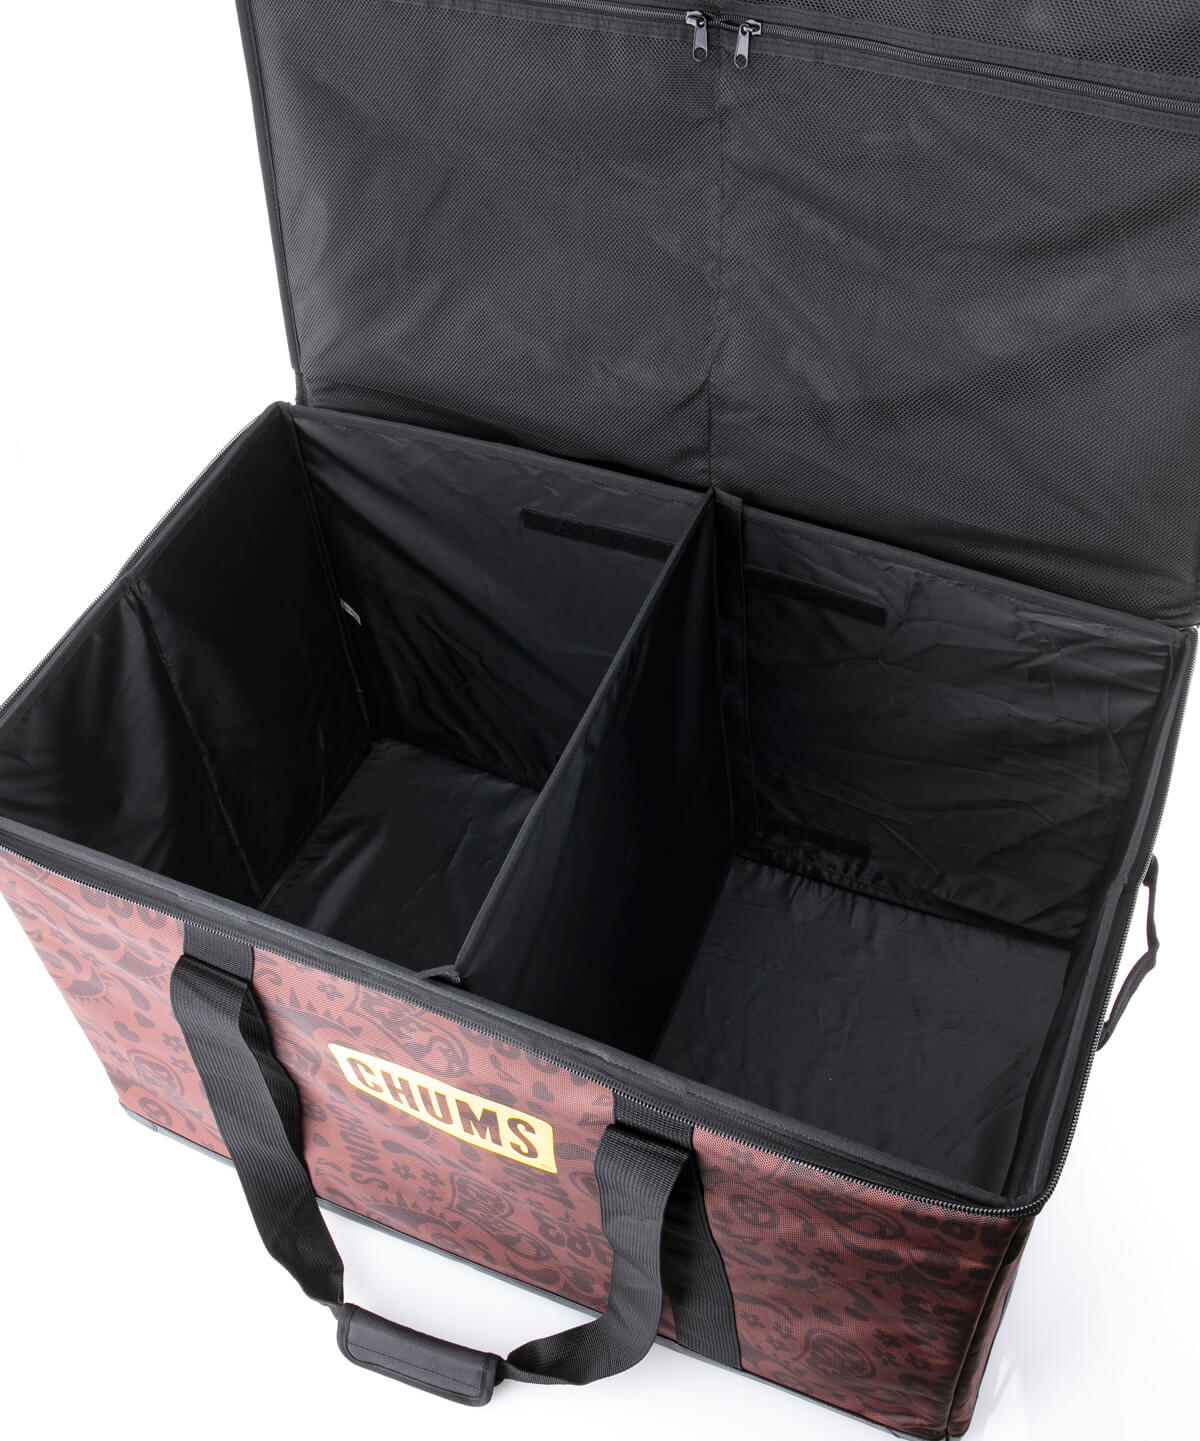 Foldable Box M フォーダブルボックスm キャンプ用品 収納ケース サイズなし Black キャンプ用品 Chums チャムス アウトドアファッション公式通販